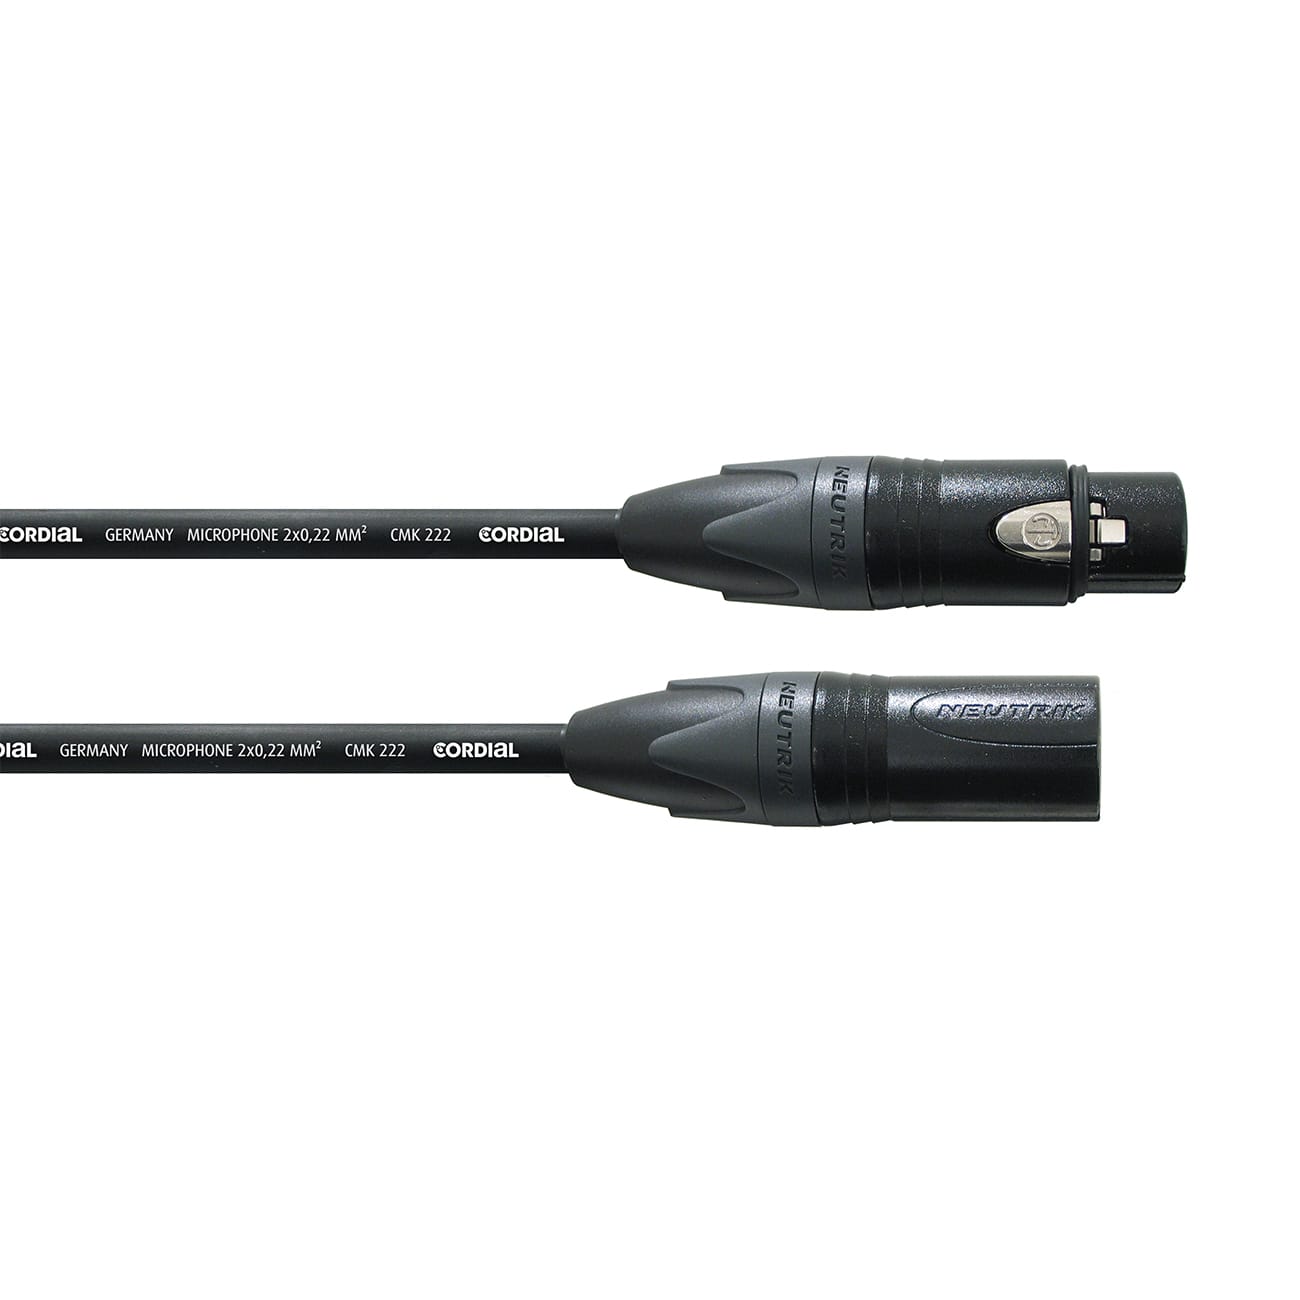 Cable XLR - Cable de Micrófono o Bocina conectores Neutrik